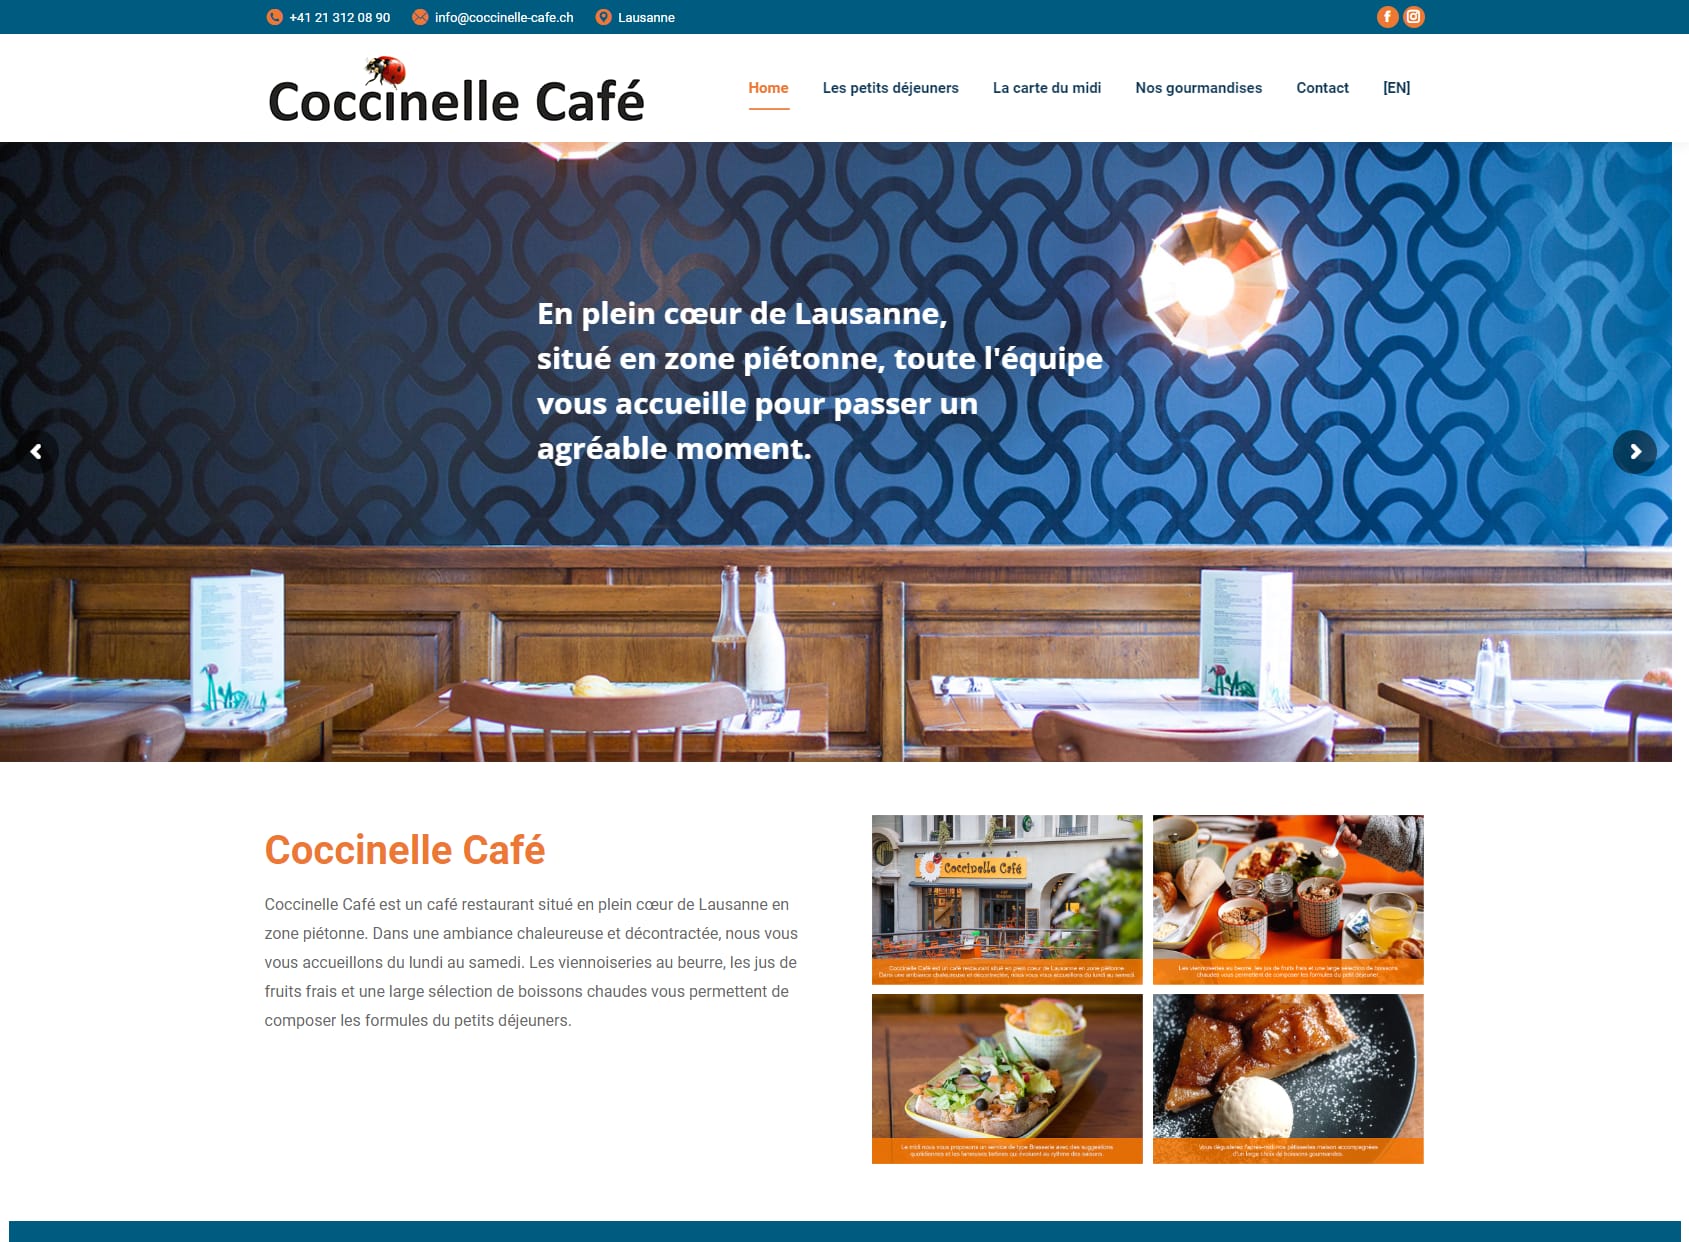 Coccinelle Café